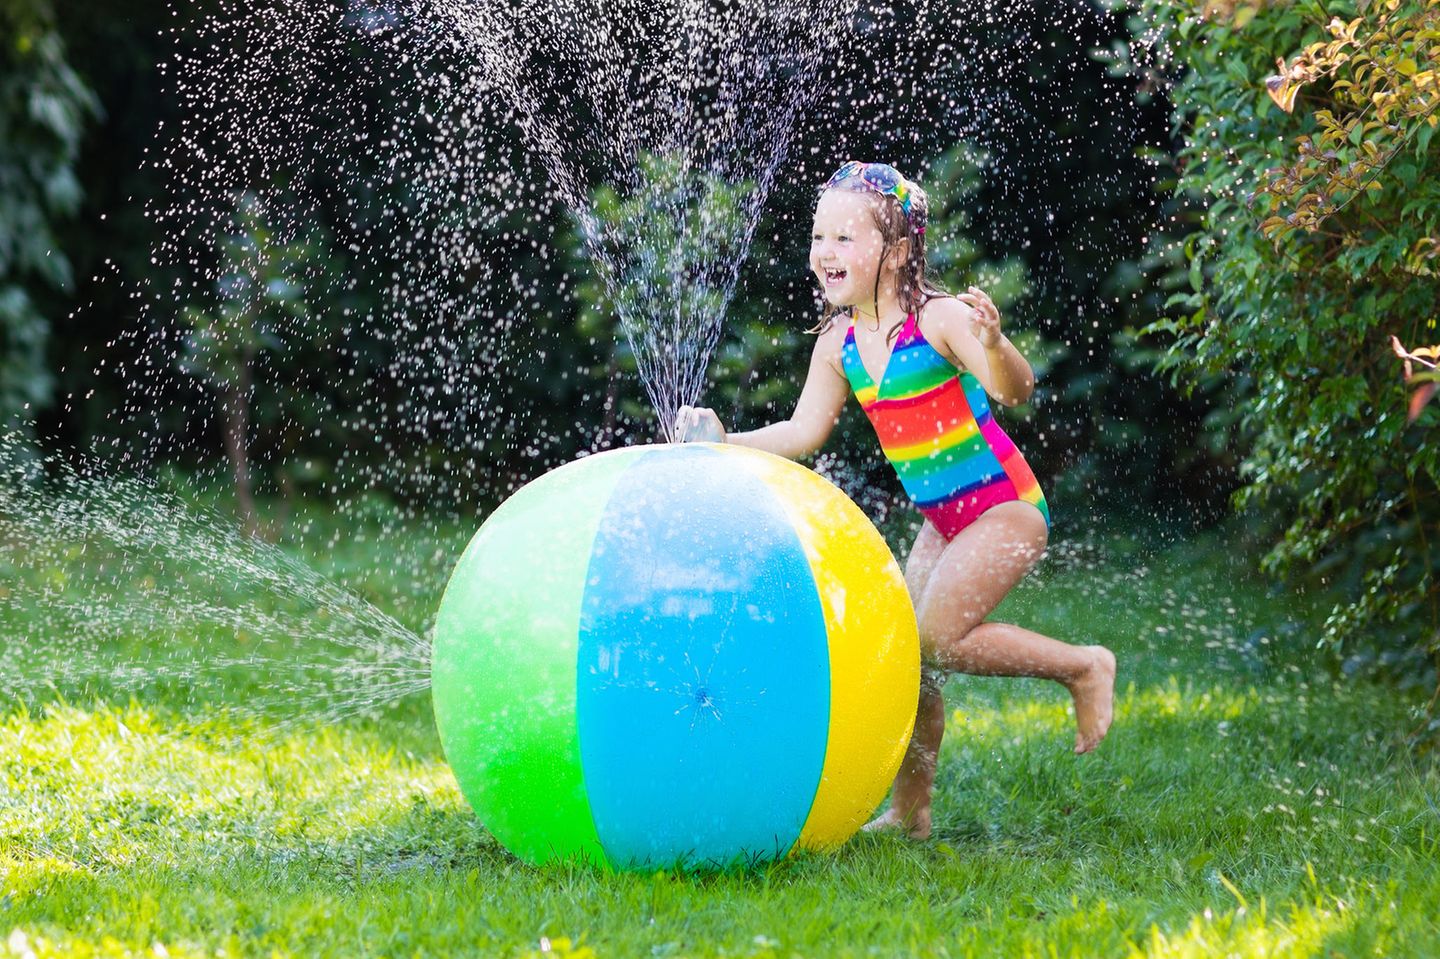 Wasserspielzeug: Mädchen in Badeanzug mit Wasserspielzeug im Garten, bunter Wasserball mit Düsen für Kinder